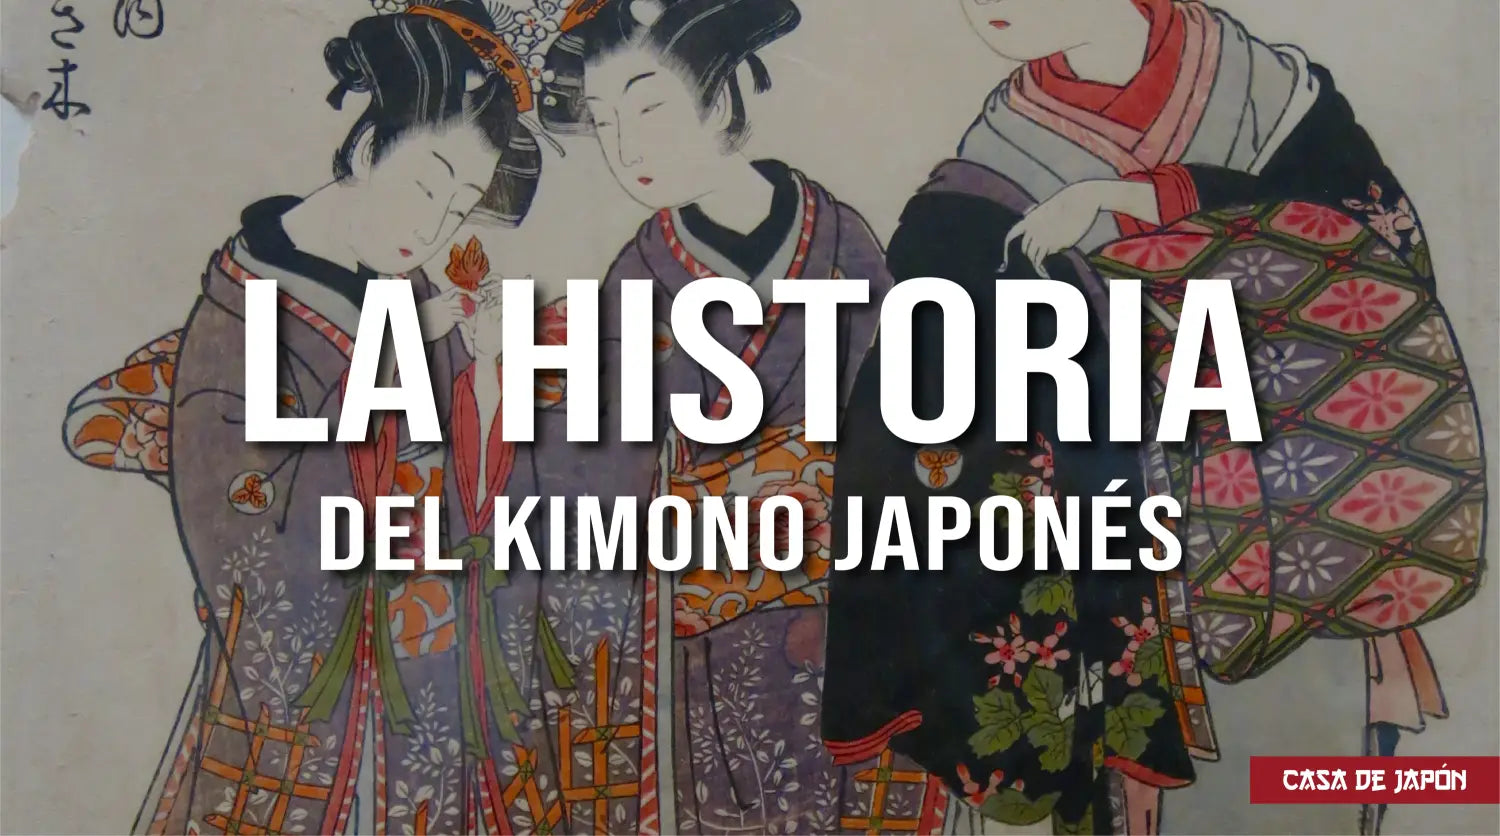 La historia del kimono japonés